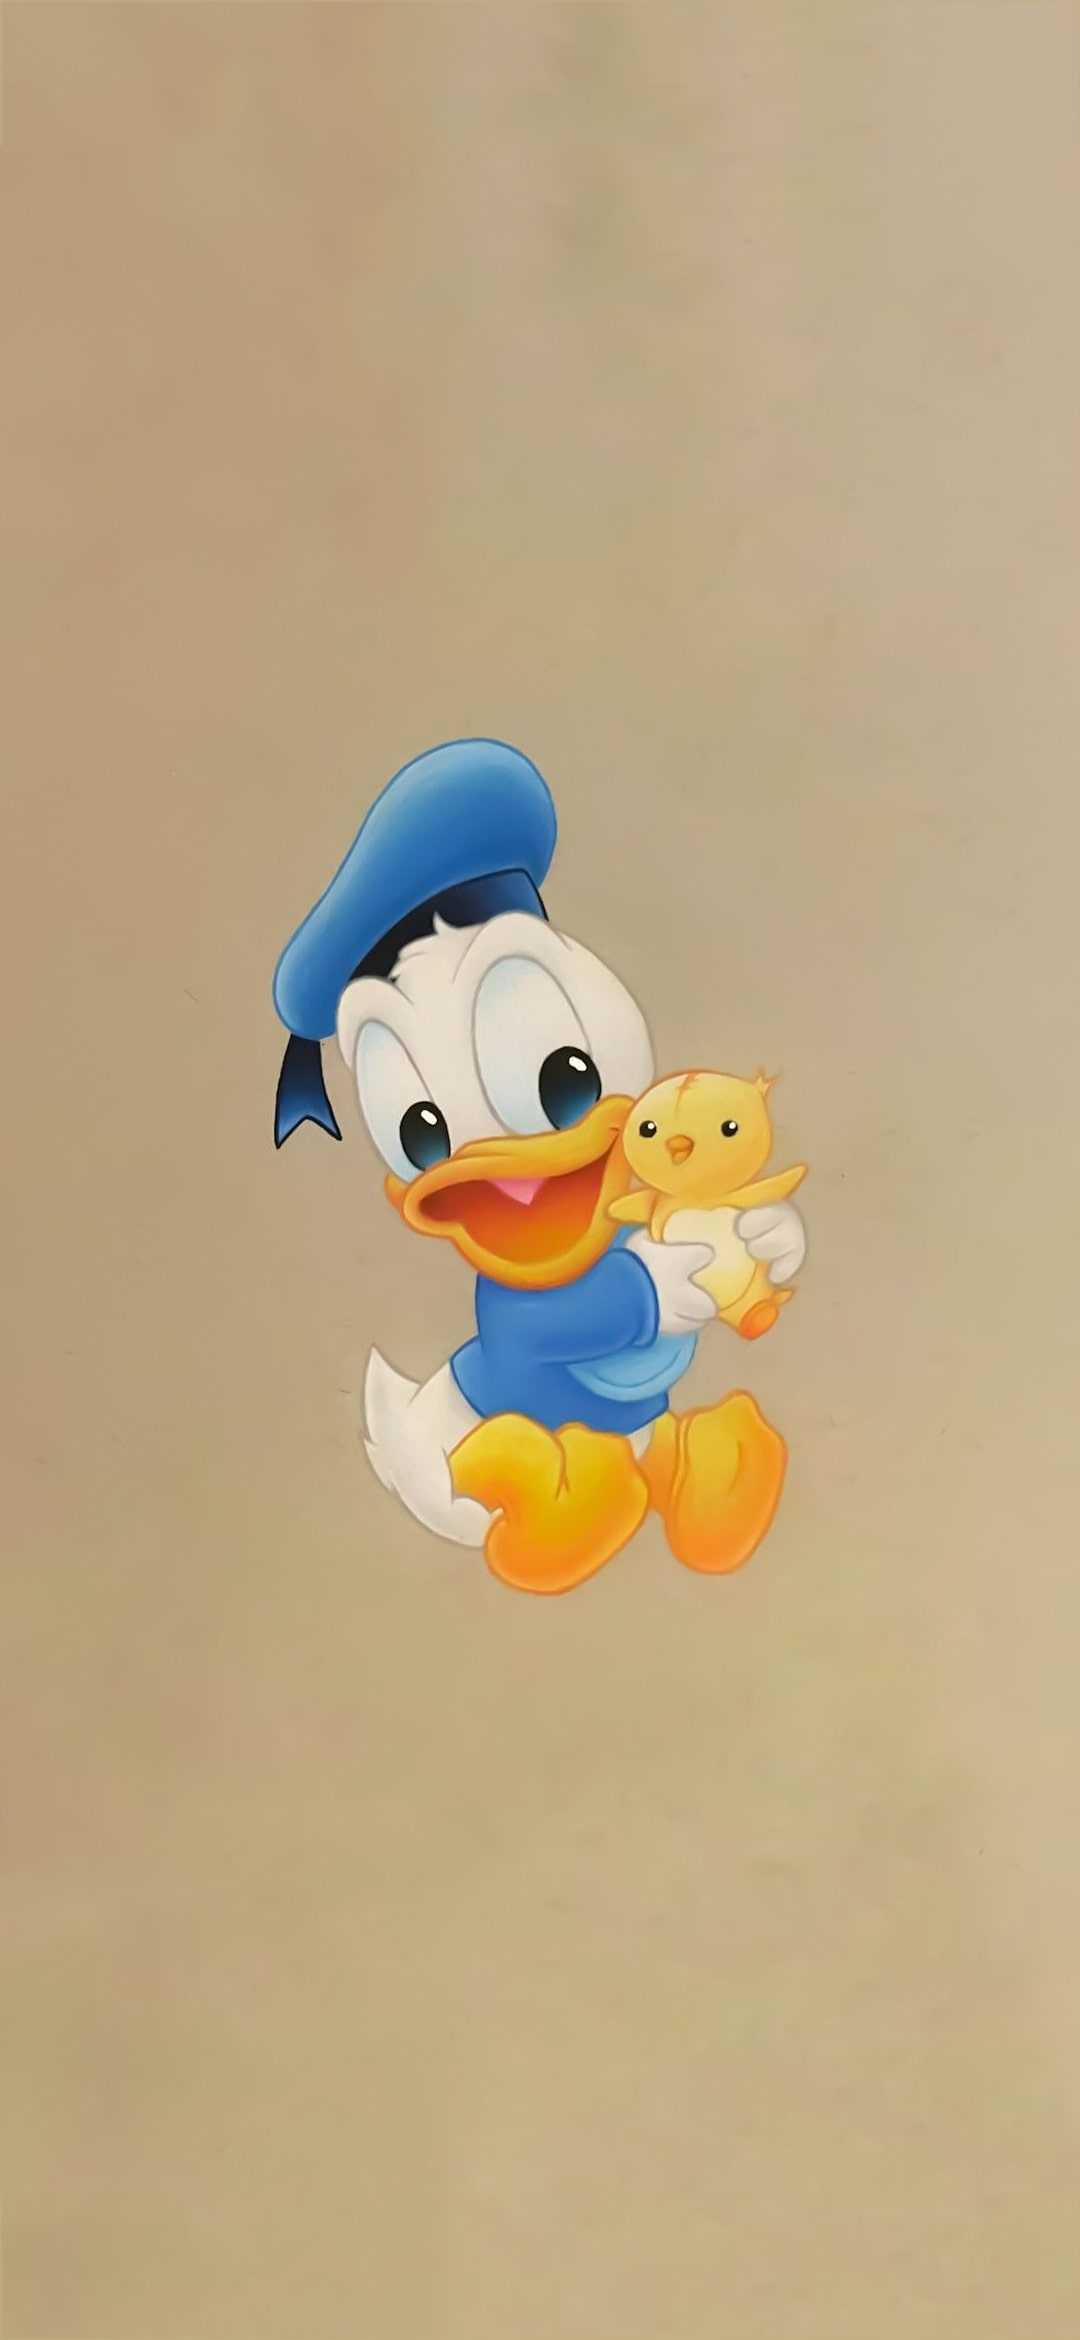 Cute Donald Duck Wallpaper